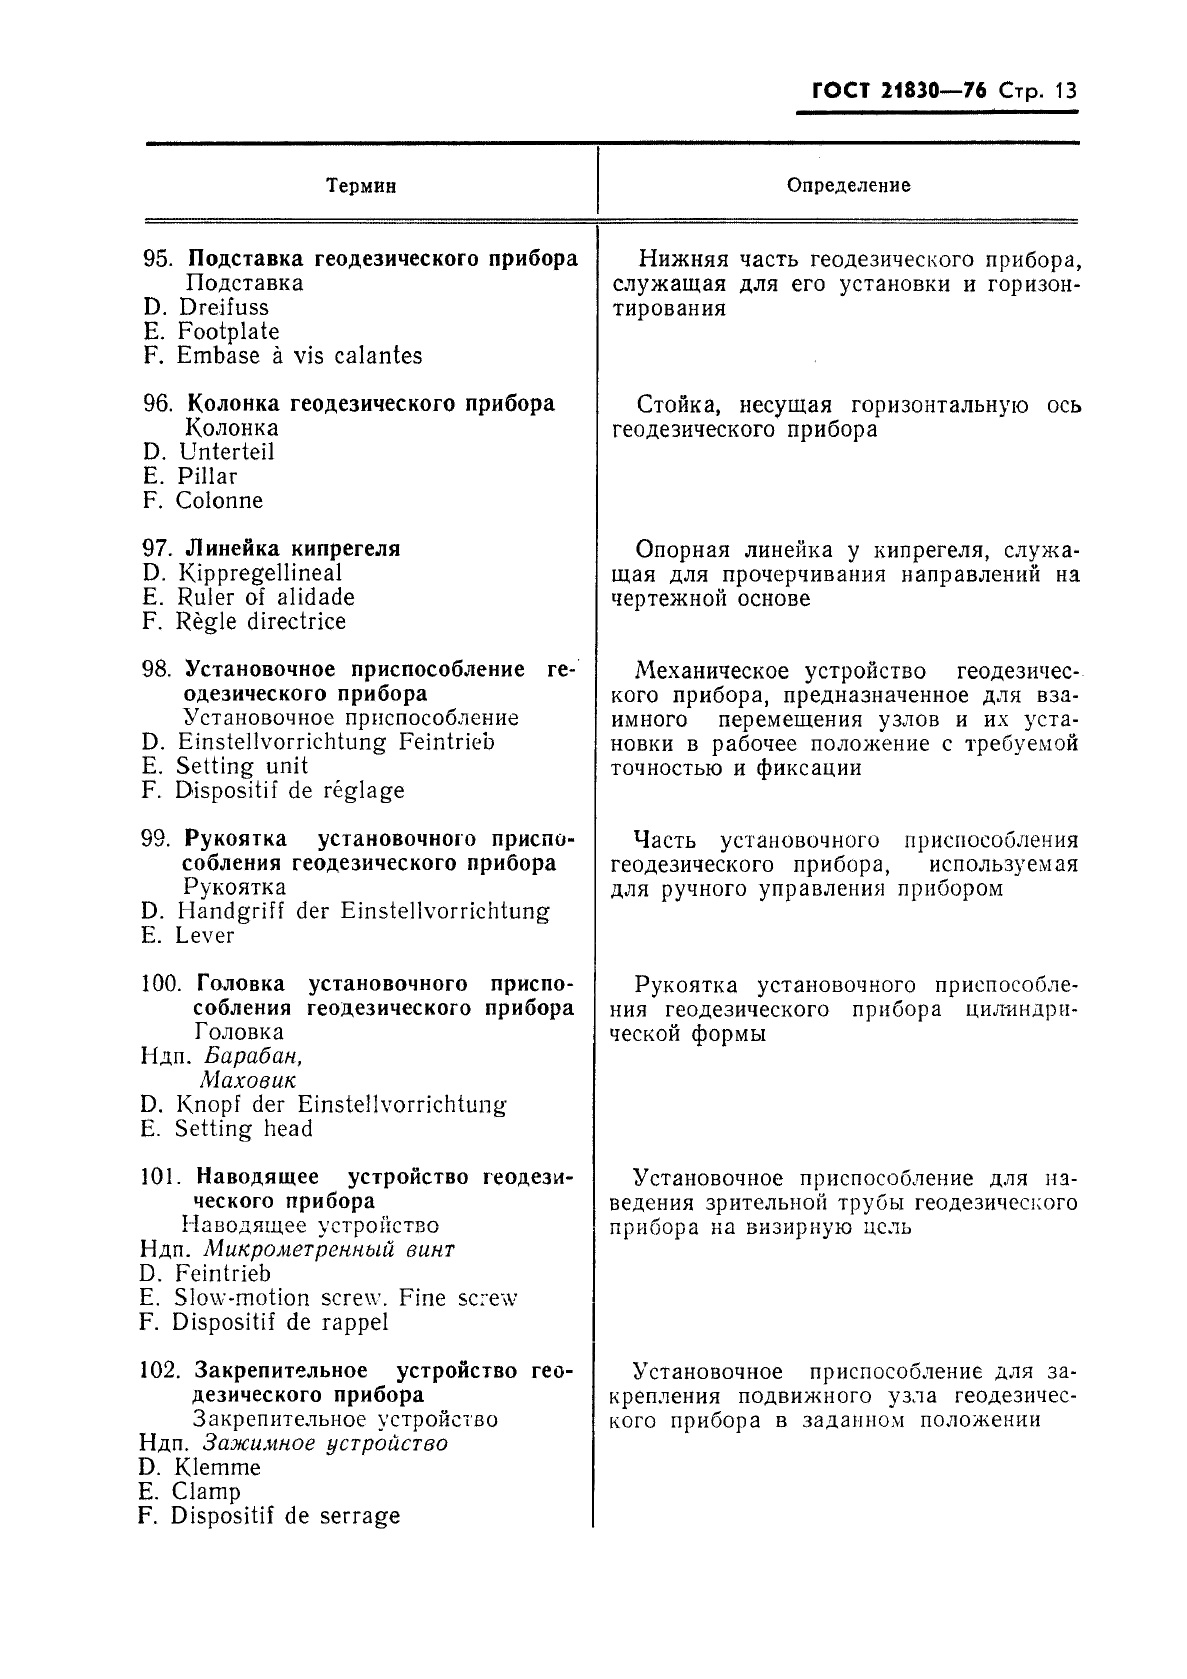 ГОСТ 21830-76 Приборы геодезические. Термины и определения (фото 14 из 27)